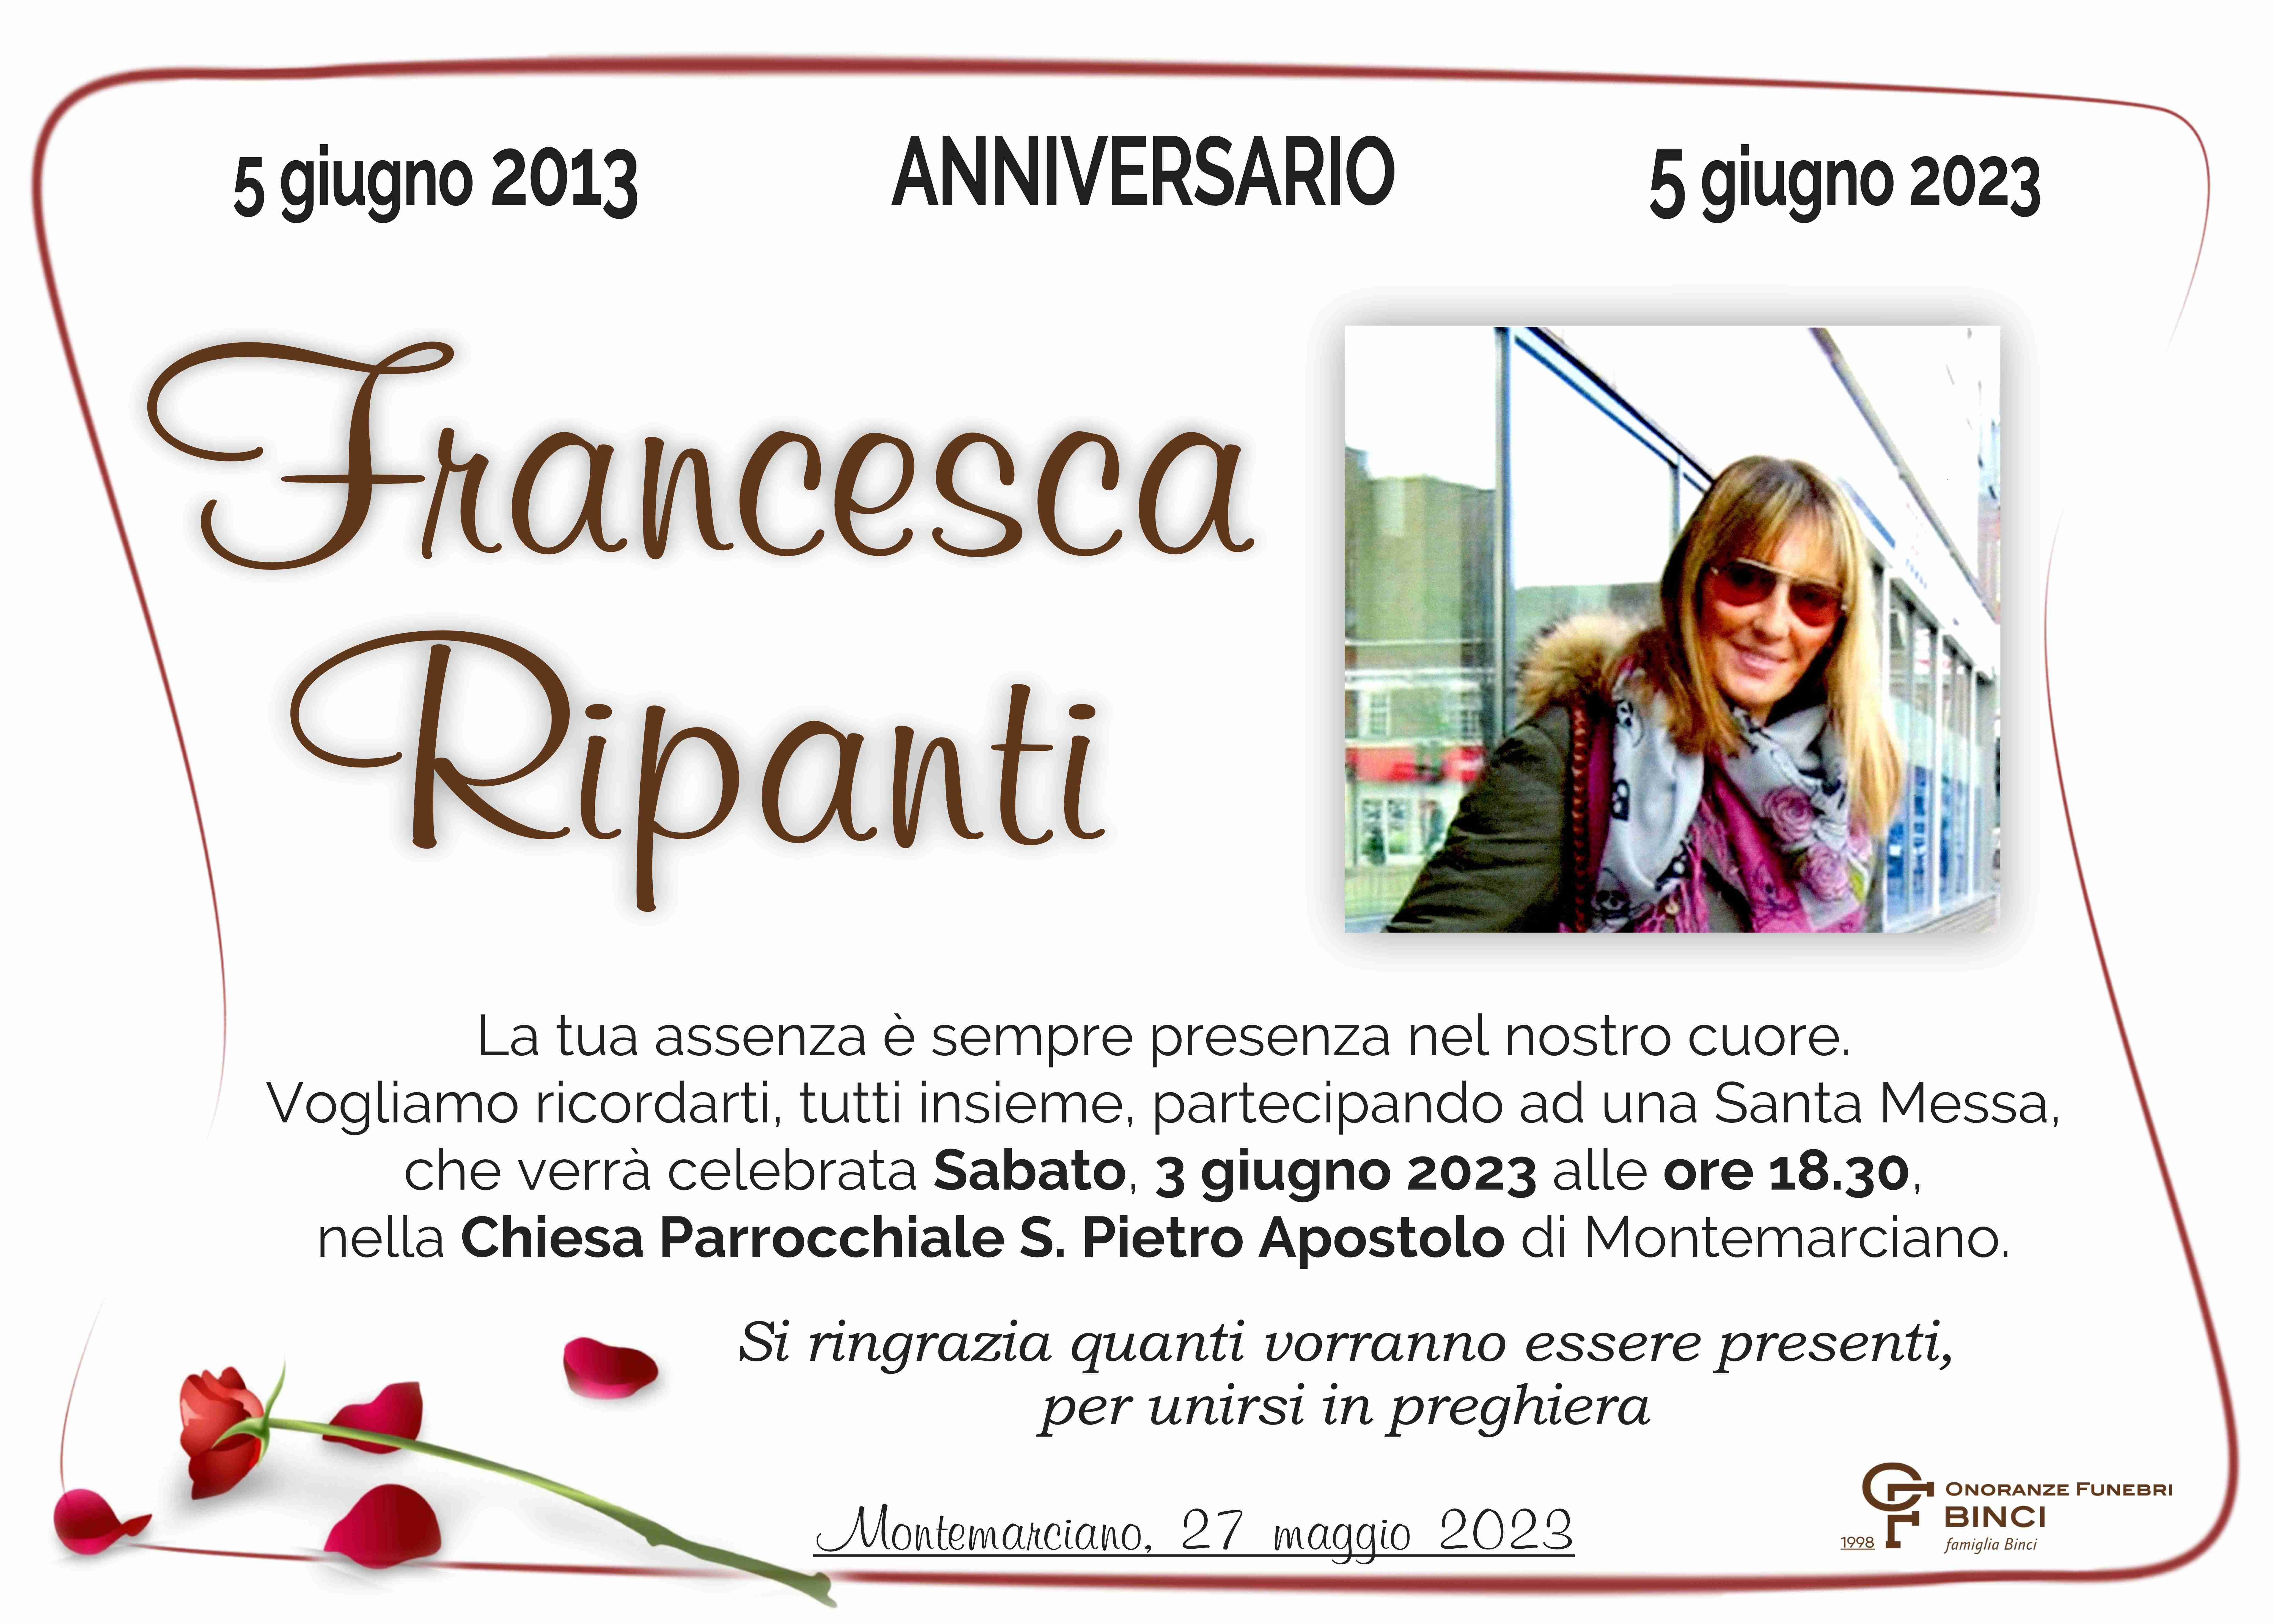 Francesca Ripanti